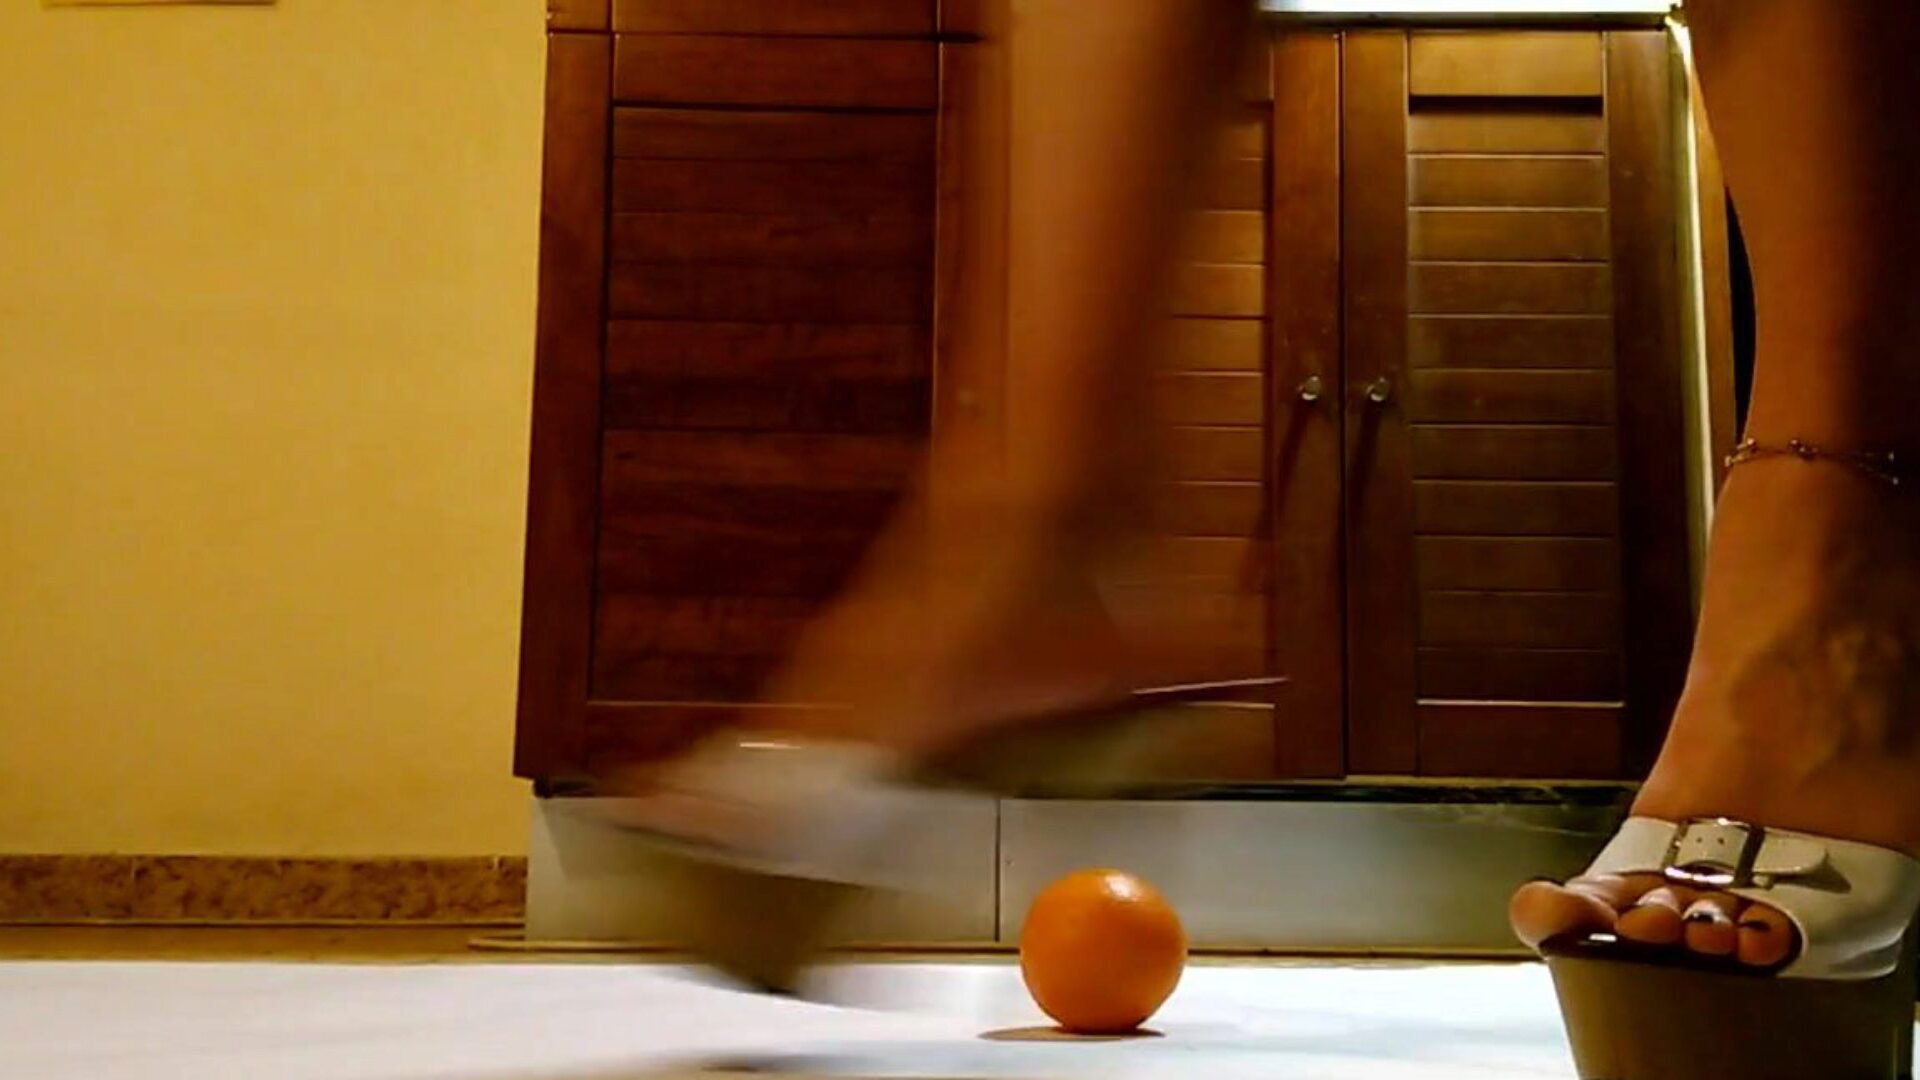 servitør leke og slå oransje i hawt plattform høyhælte sko servitrisen ha det gøy og sparke oransje i sexy plattform høyhælte sko